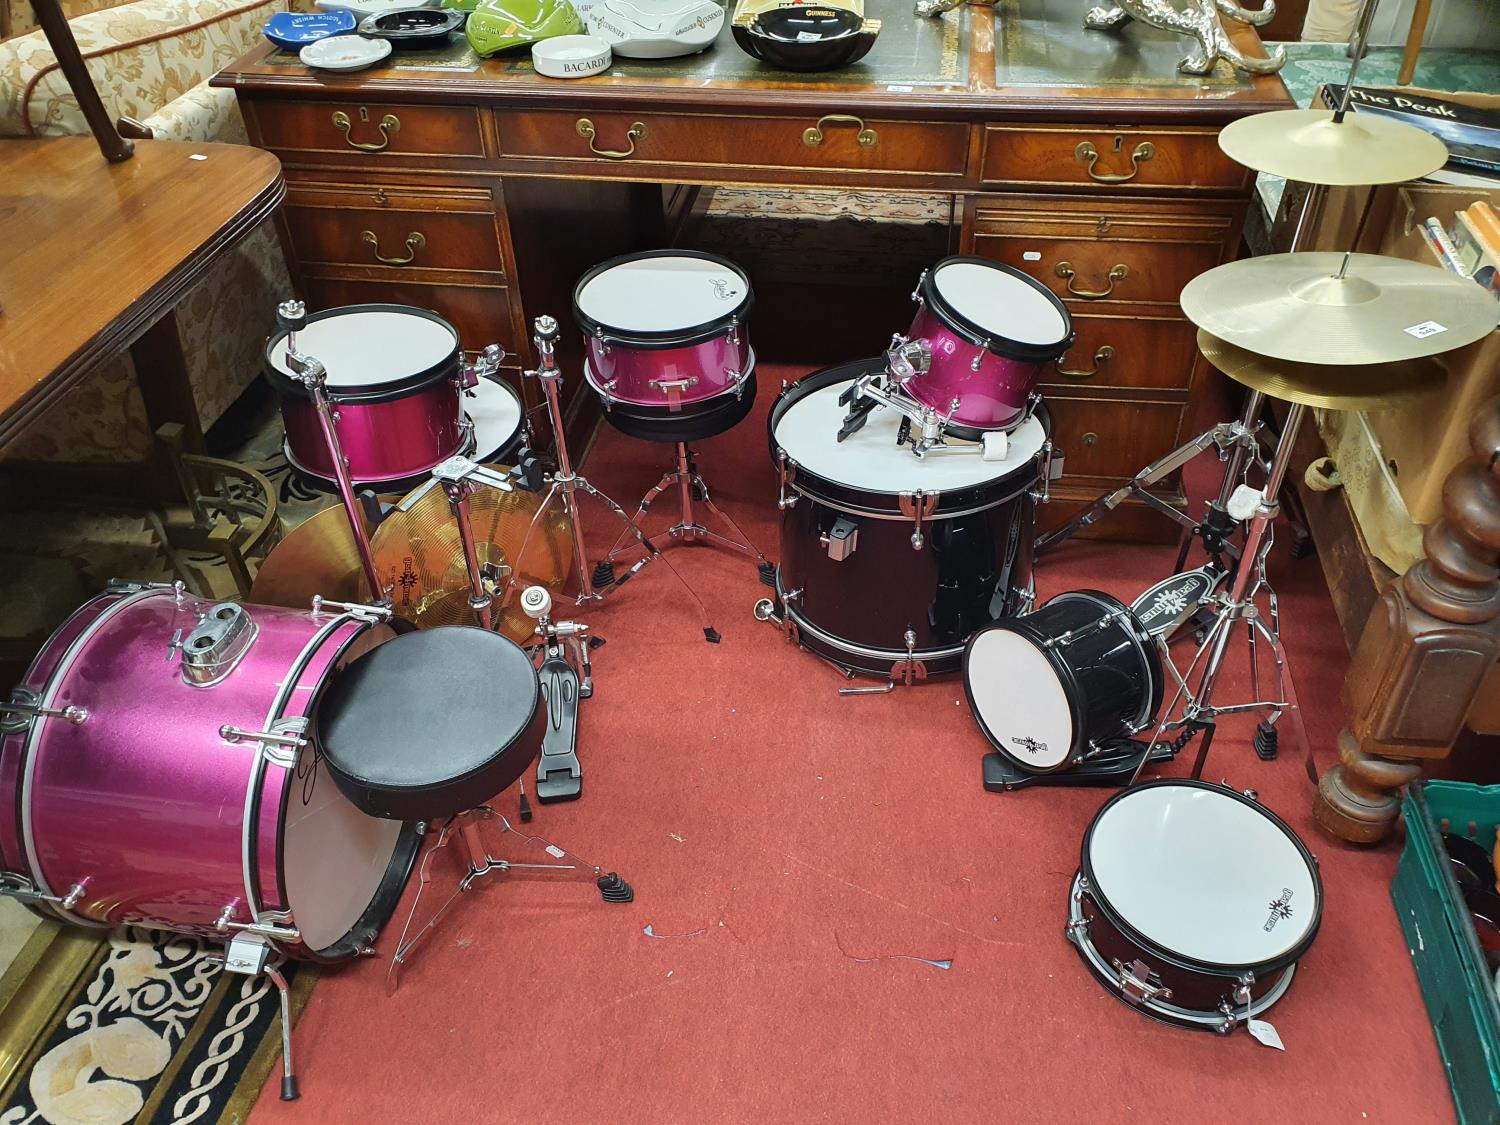 A large Drum set.